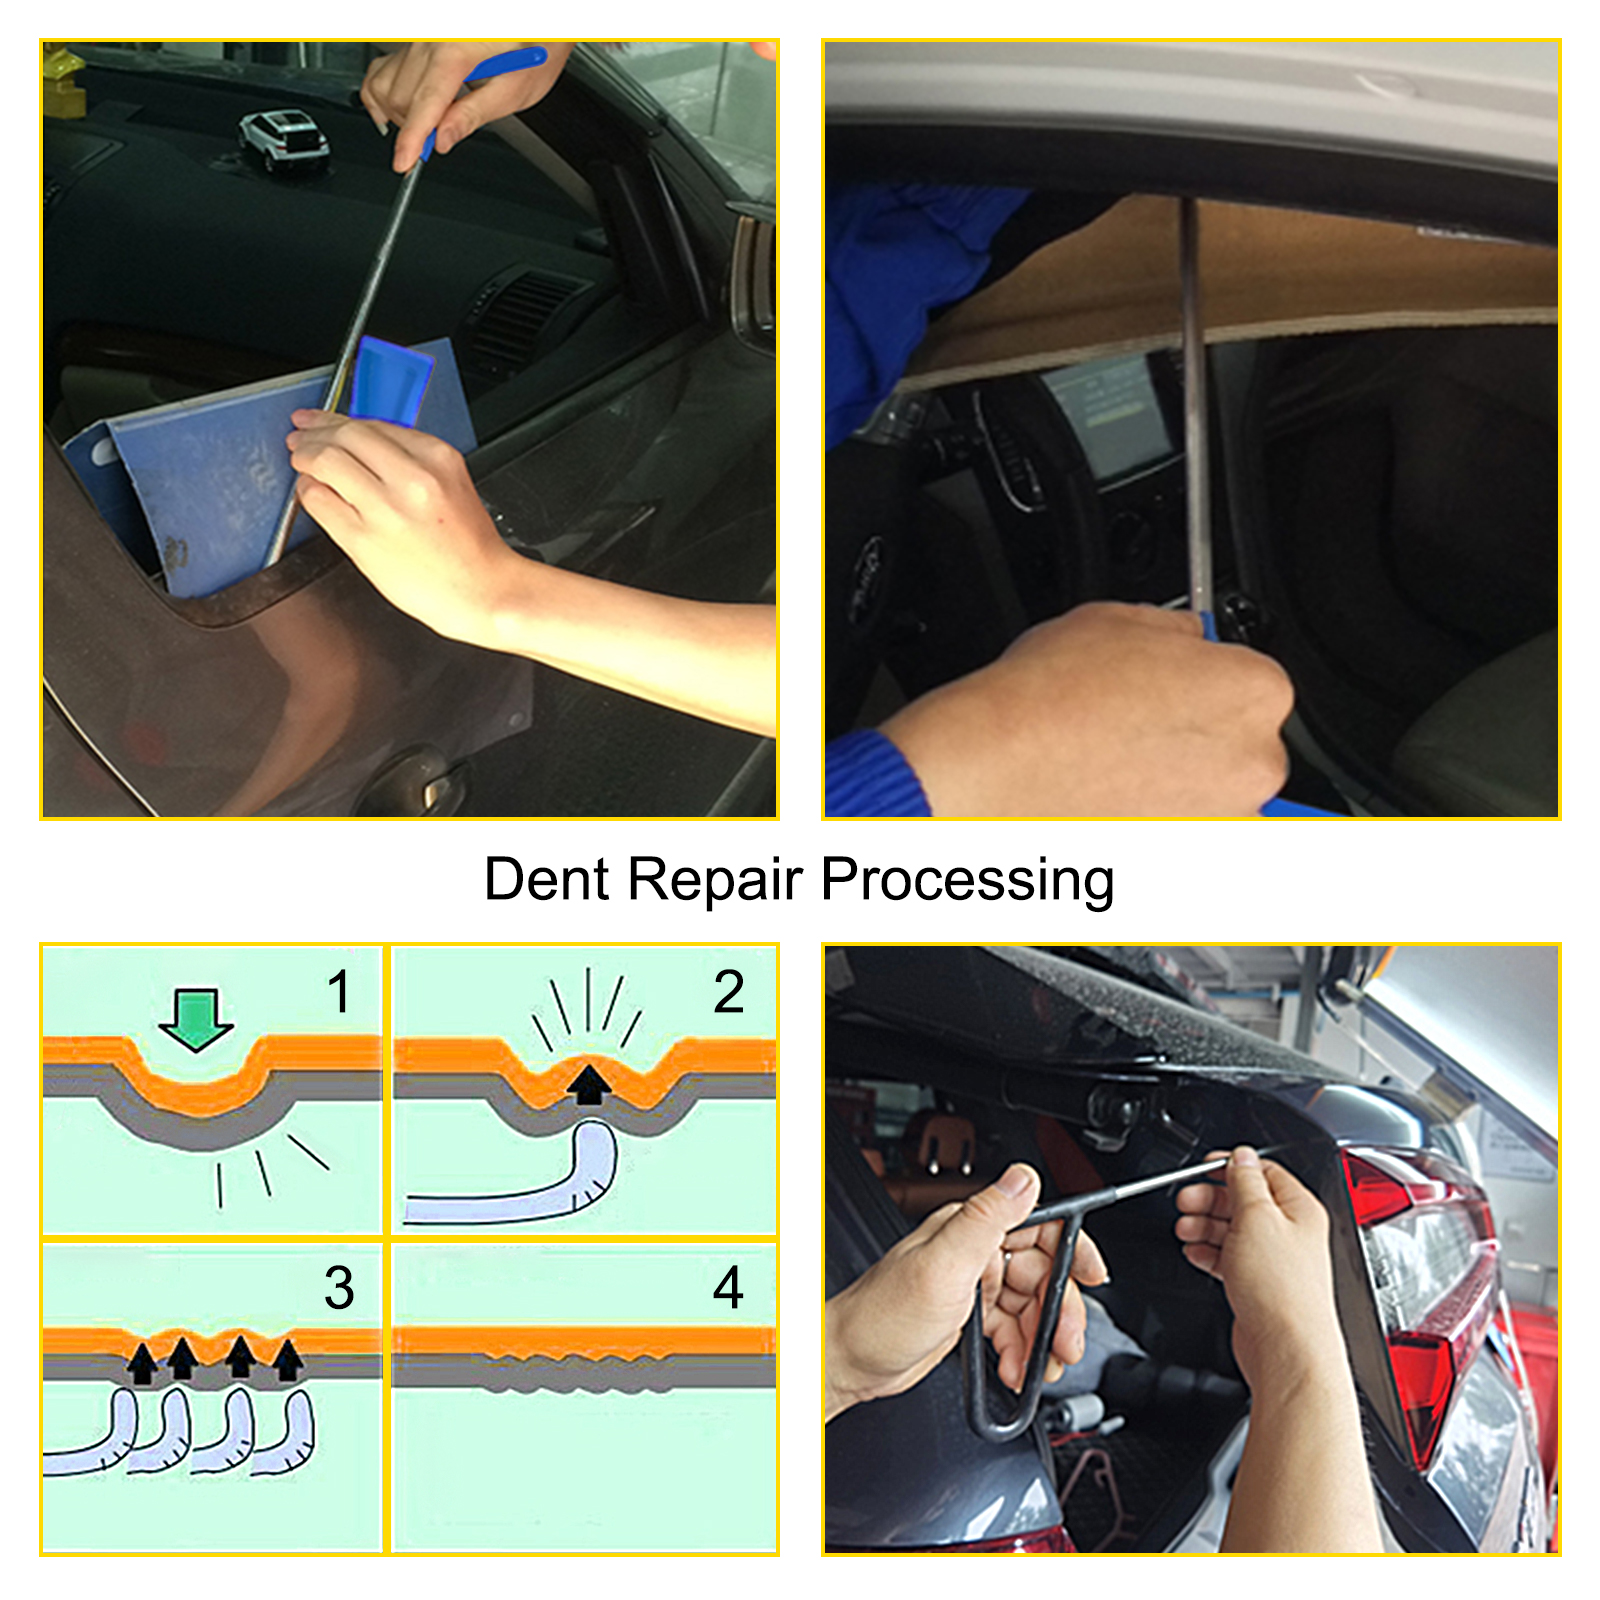 VEVOR Car Dent Removal Tool Dent Repair Puller Kit Paintless for